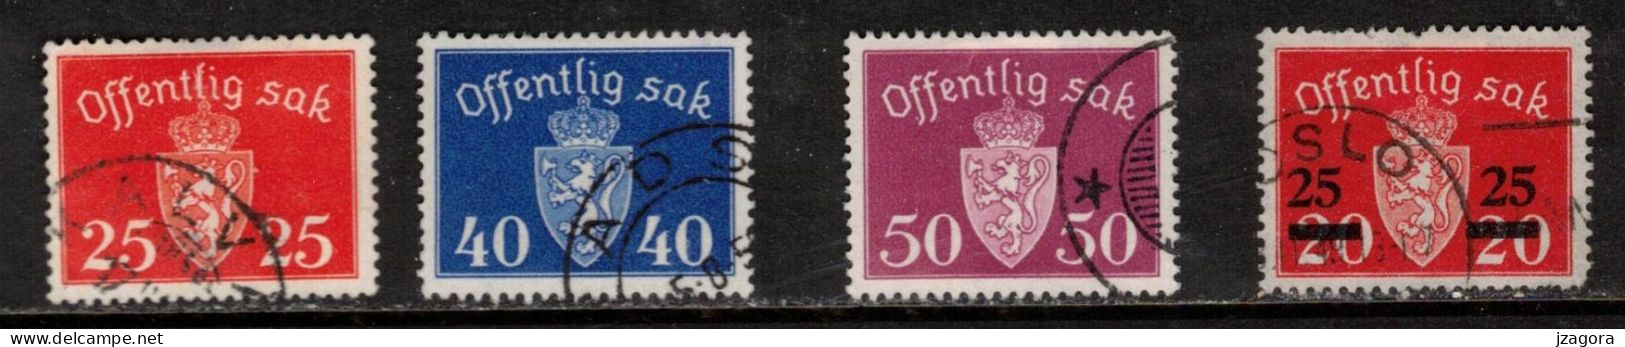 NORWAY NORGE NORWEGEN NORVÈGE 1946 1947 1949 MI 55 57 58 60 DIENSTMARKEN OFFICIALS OFF.SAK.  COAT OF ARMS STAATSWAPPEN - Dienstmarken